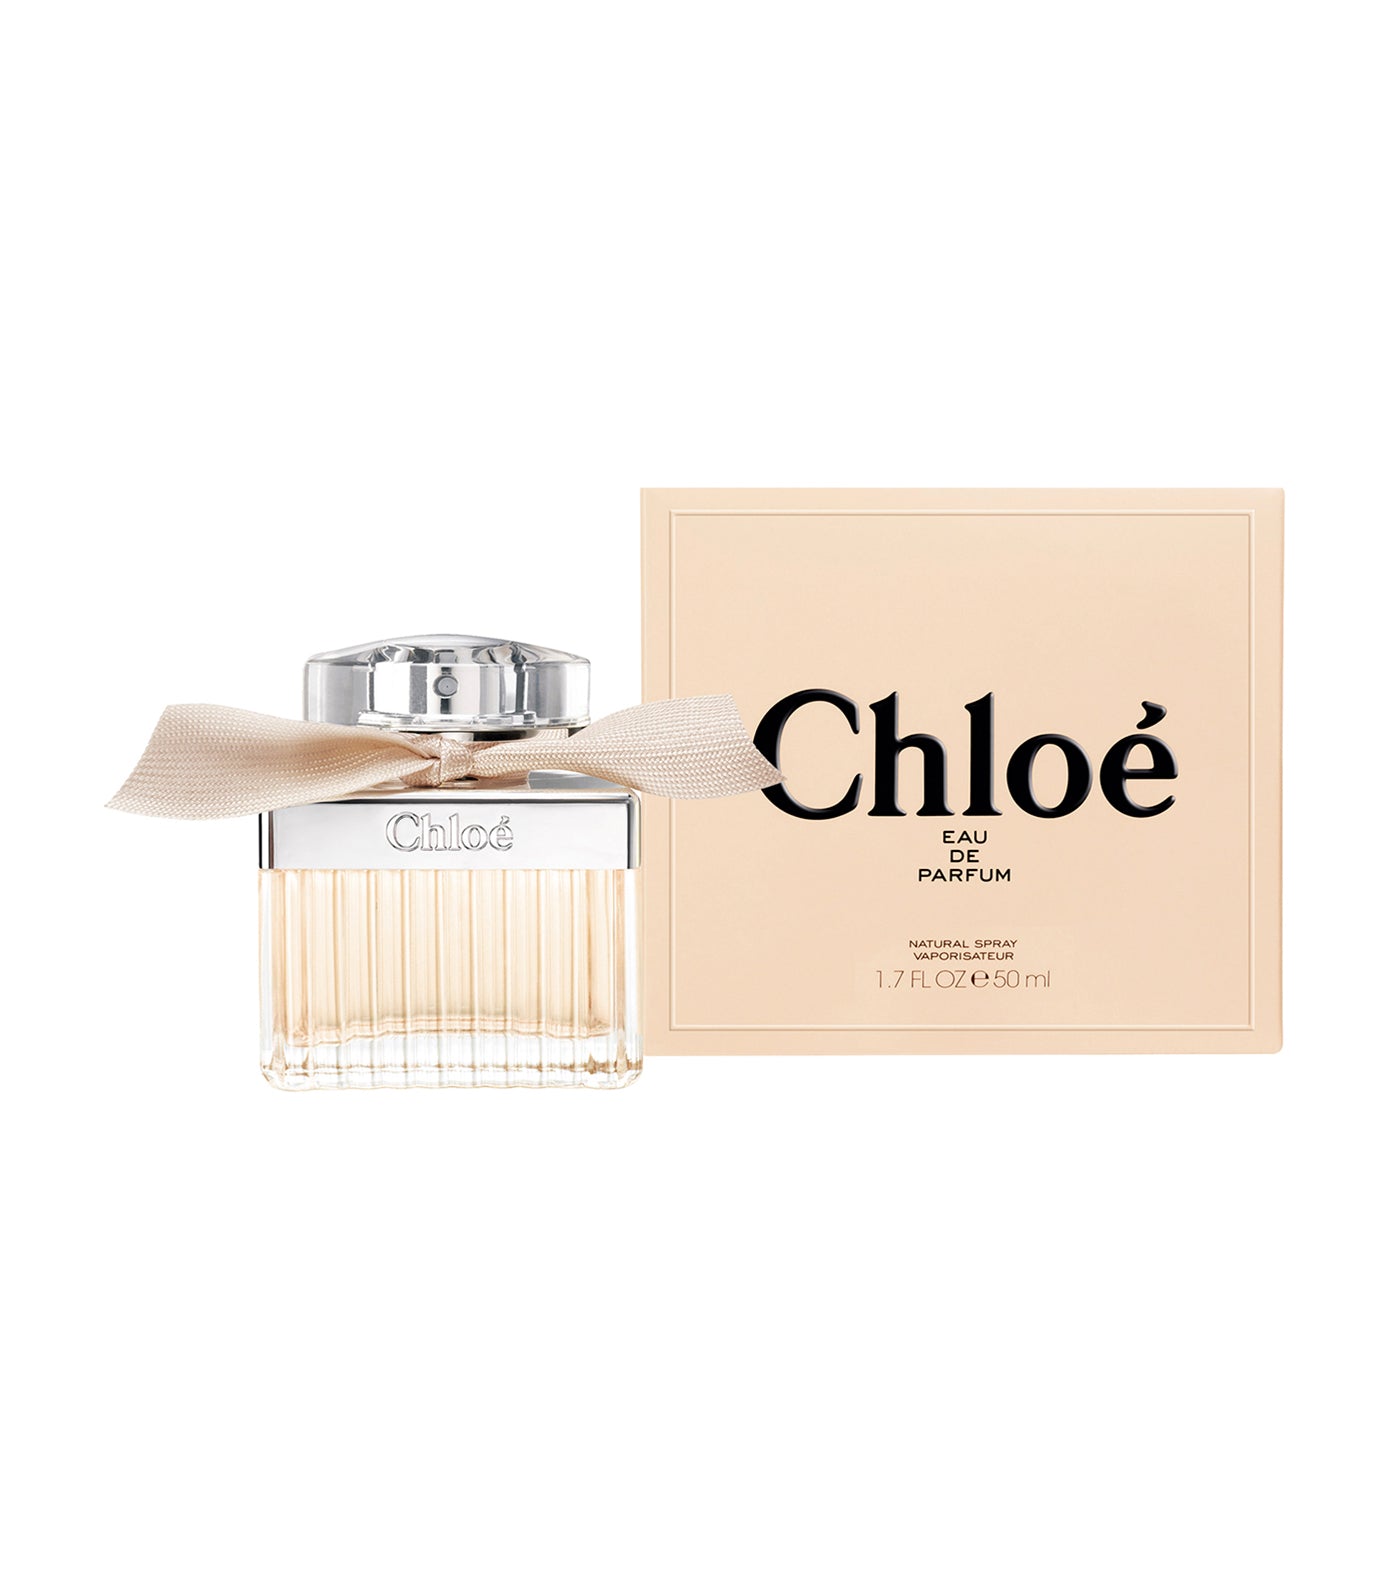 Chloé Eau de Parfum by Chloé 50ml